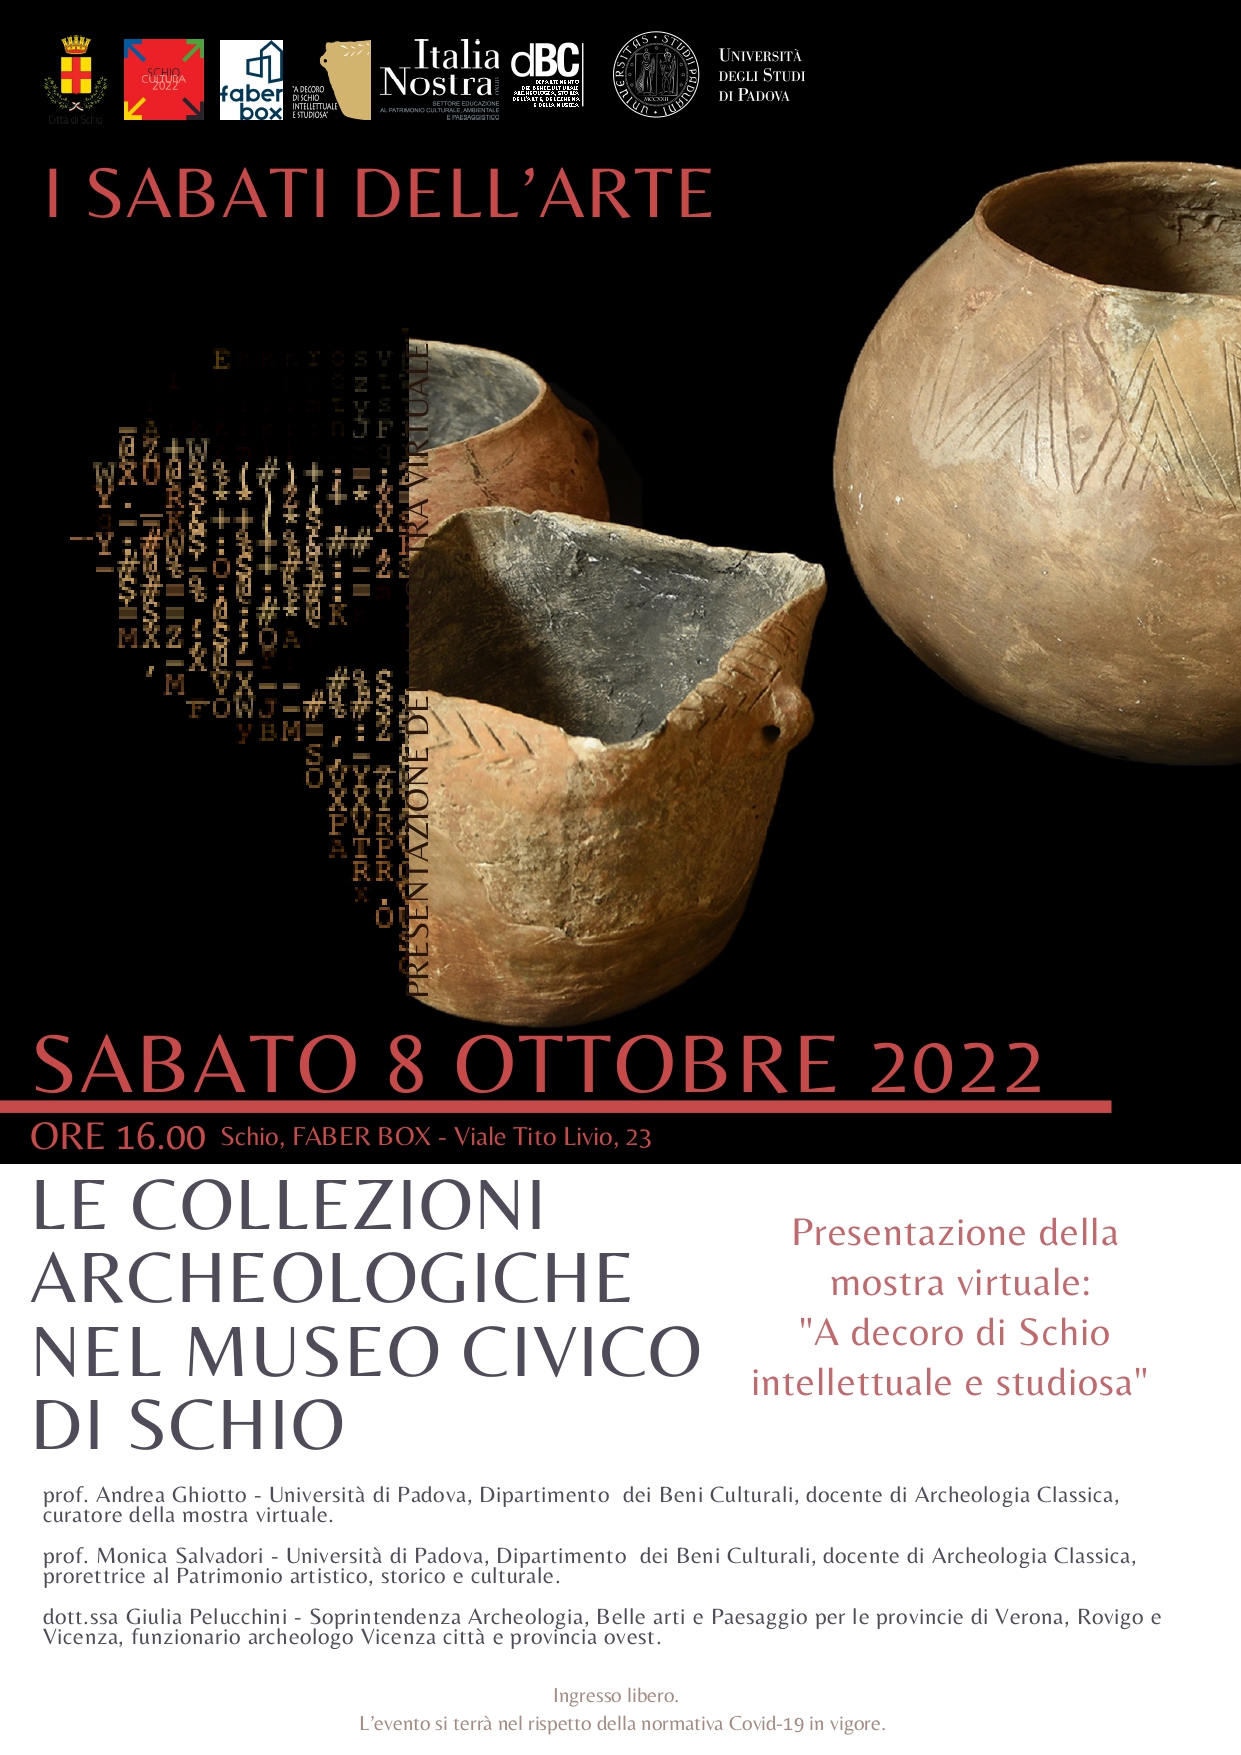 Le collezioni archeologiche al Museo Civico di Schio